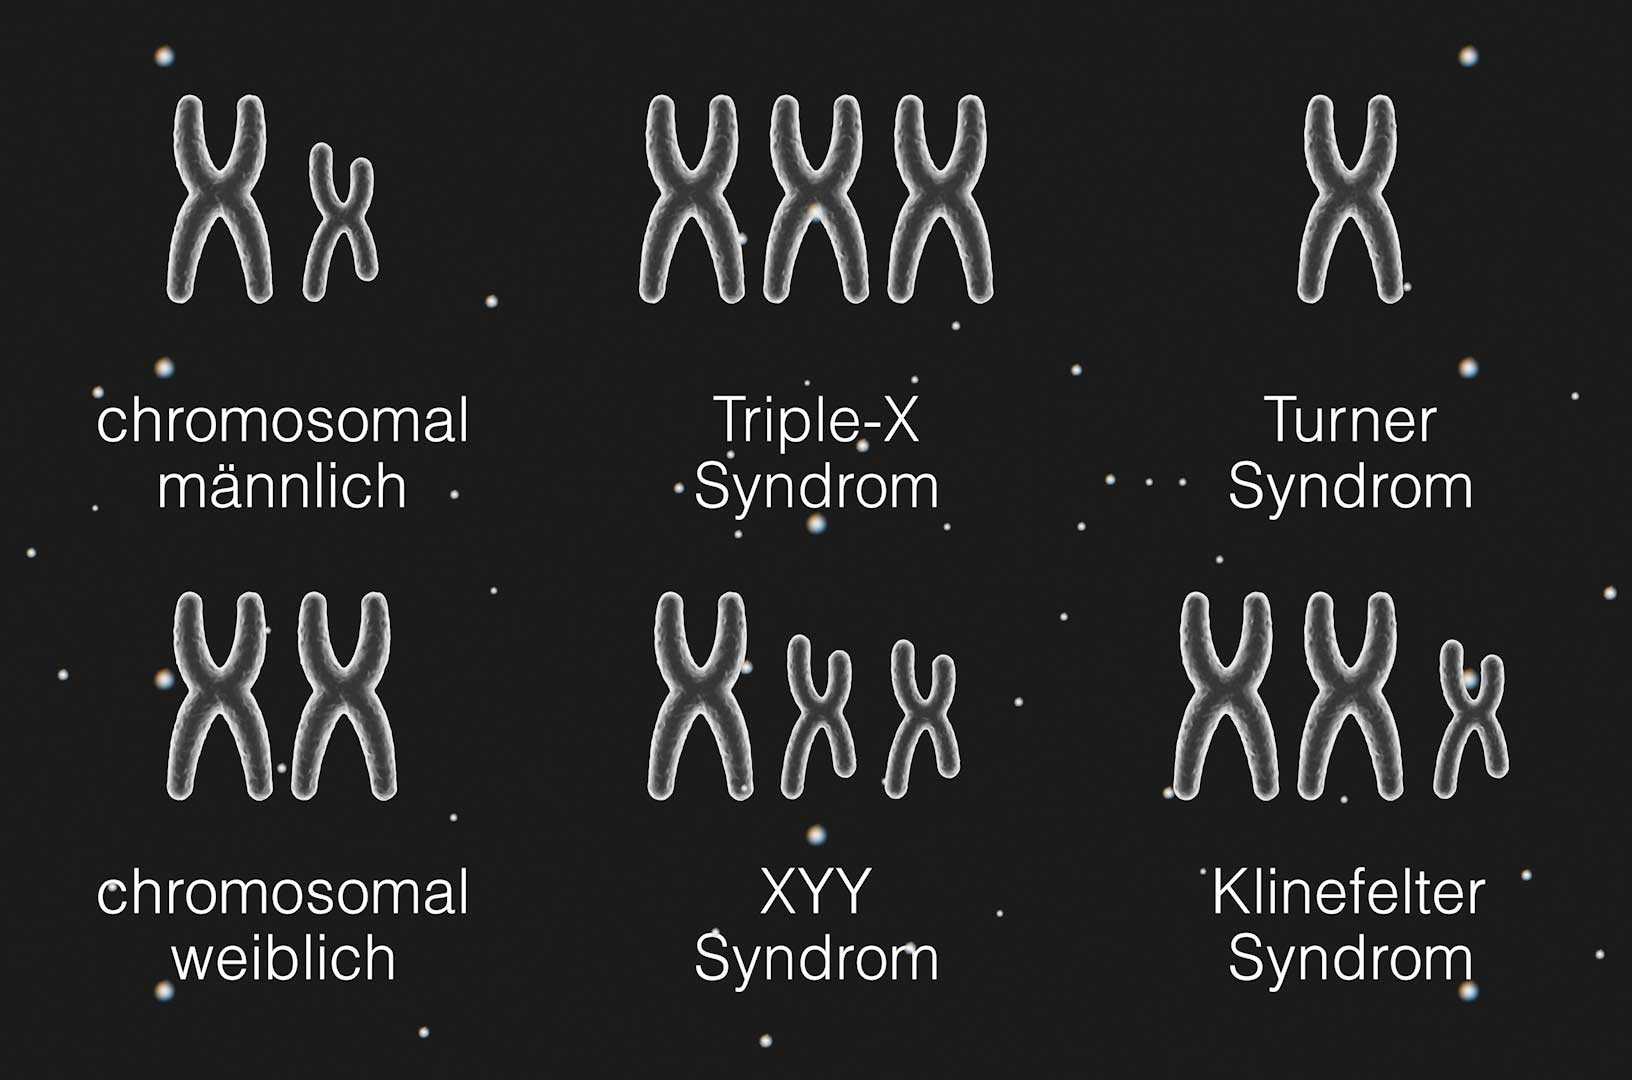 Das Bild zeigt die Verteilung der X- und Y-Chromosomen bei vier verschiedenen chromosomalen Varianten der Geschlechtsentwicklung. XY bei biologisch männlich. XX bei biologisch weiblich. XXX bei Triple X Syndrom. XYY beim XYY-Syndrom. X beim Turner-Syndrom. XXY beim Klinefelter-Sydnrom